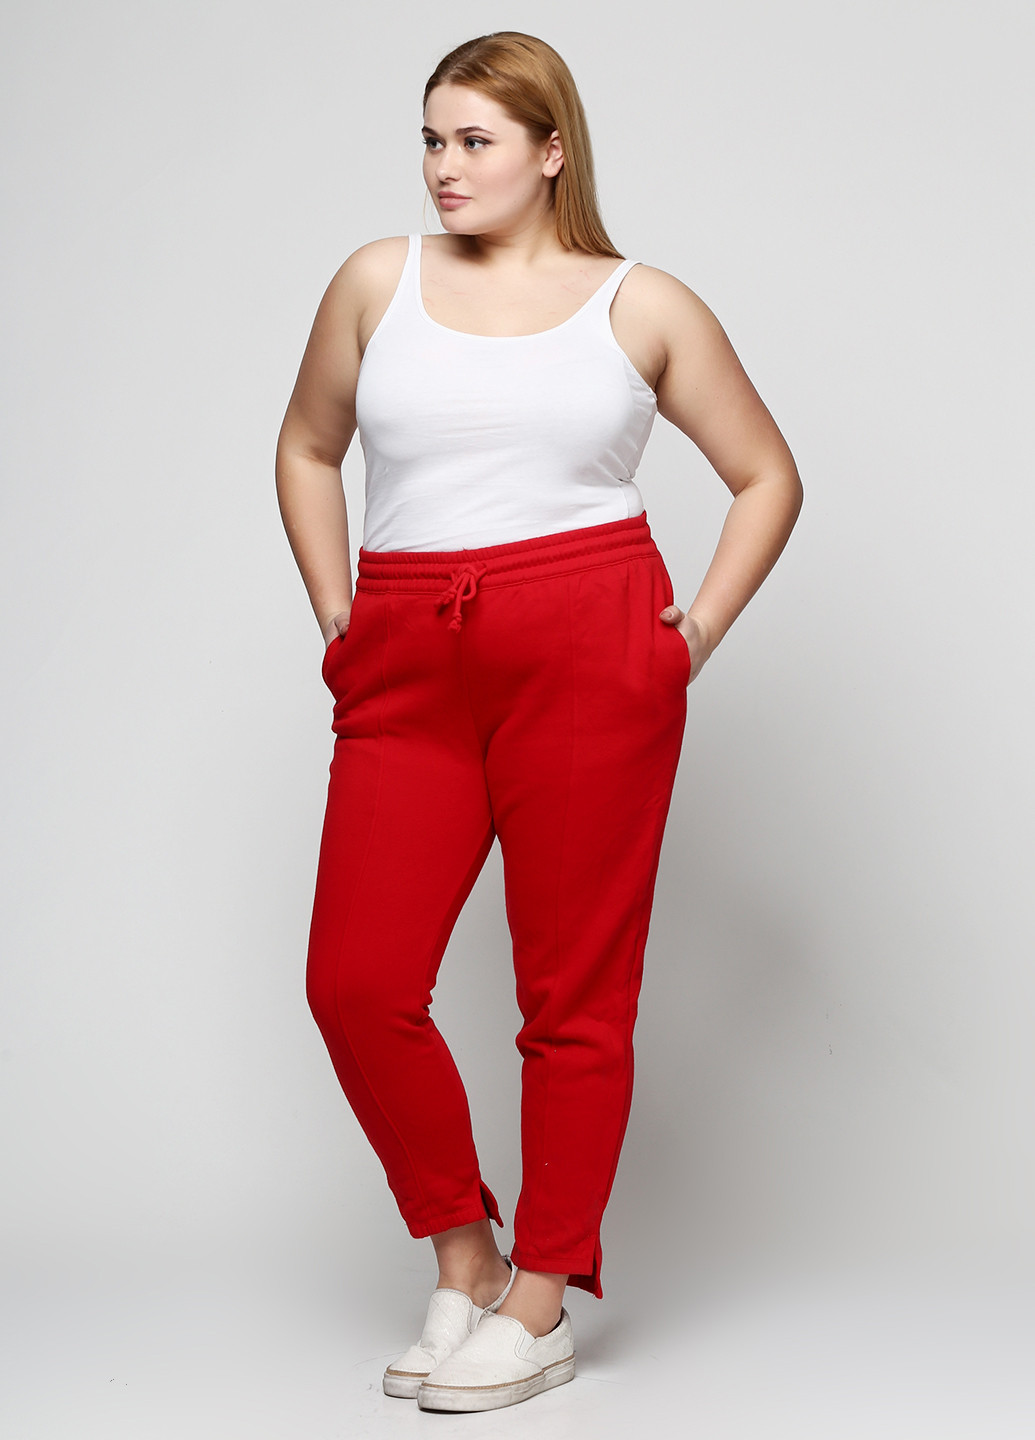 Красные спортивные демисезонные зауженные брюки H&M